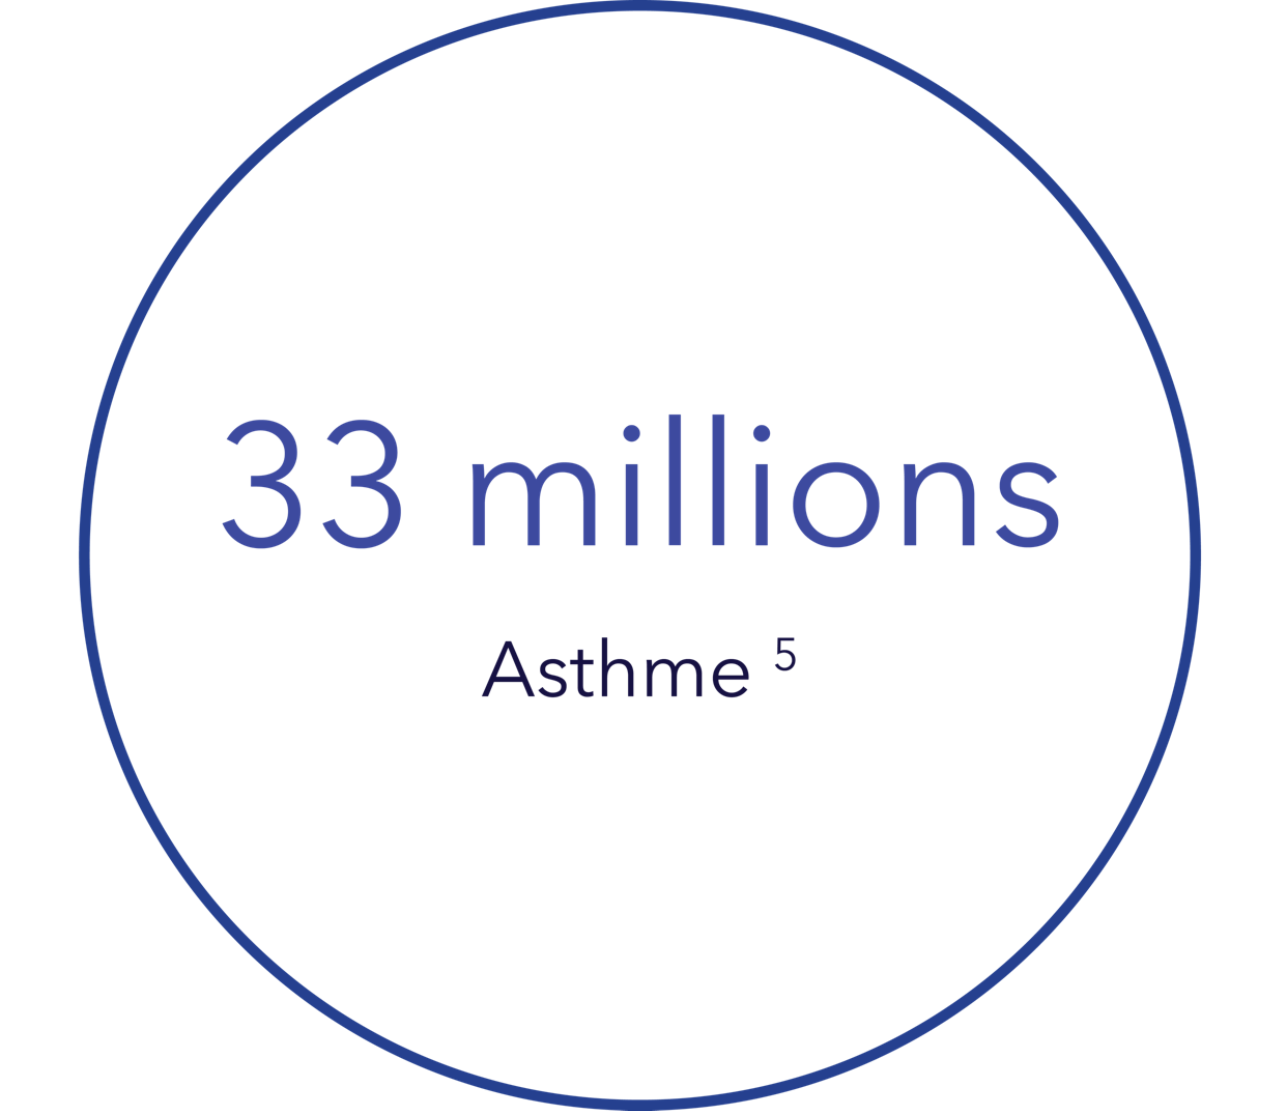 33-million-asthma-fr